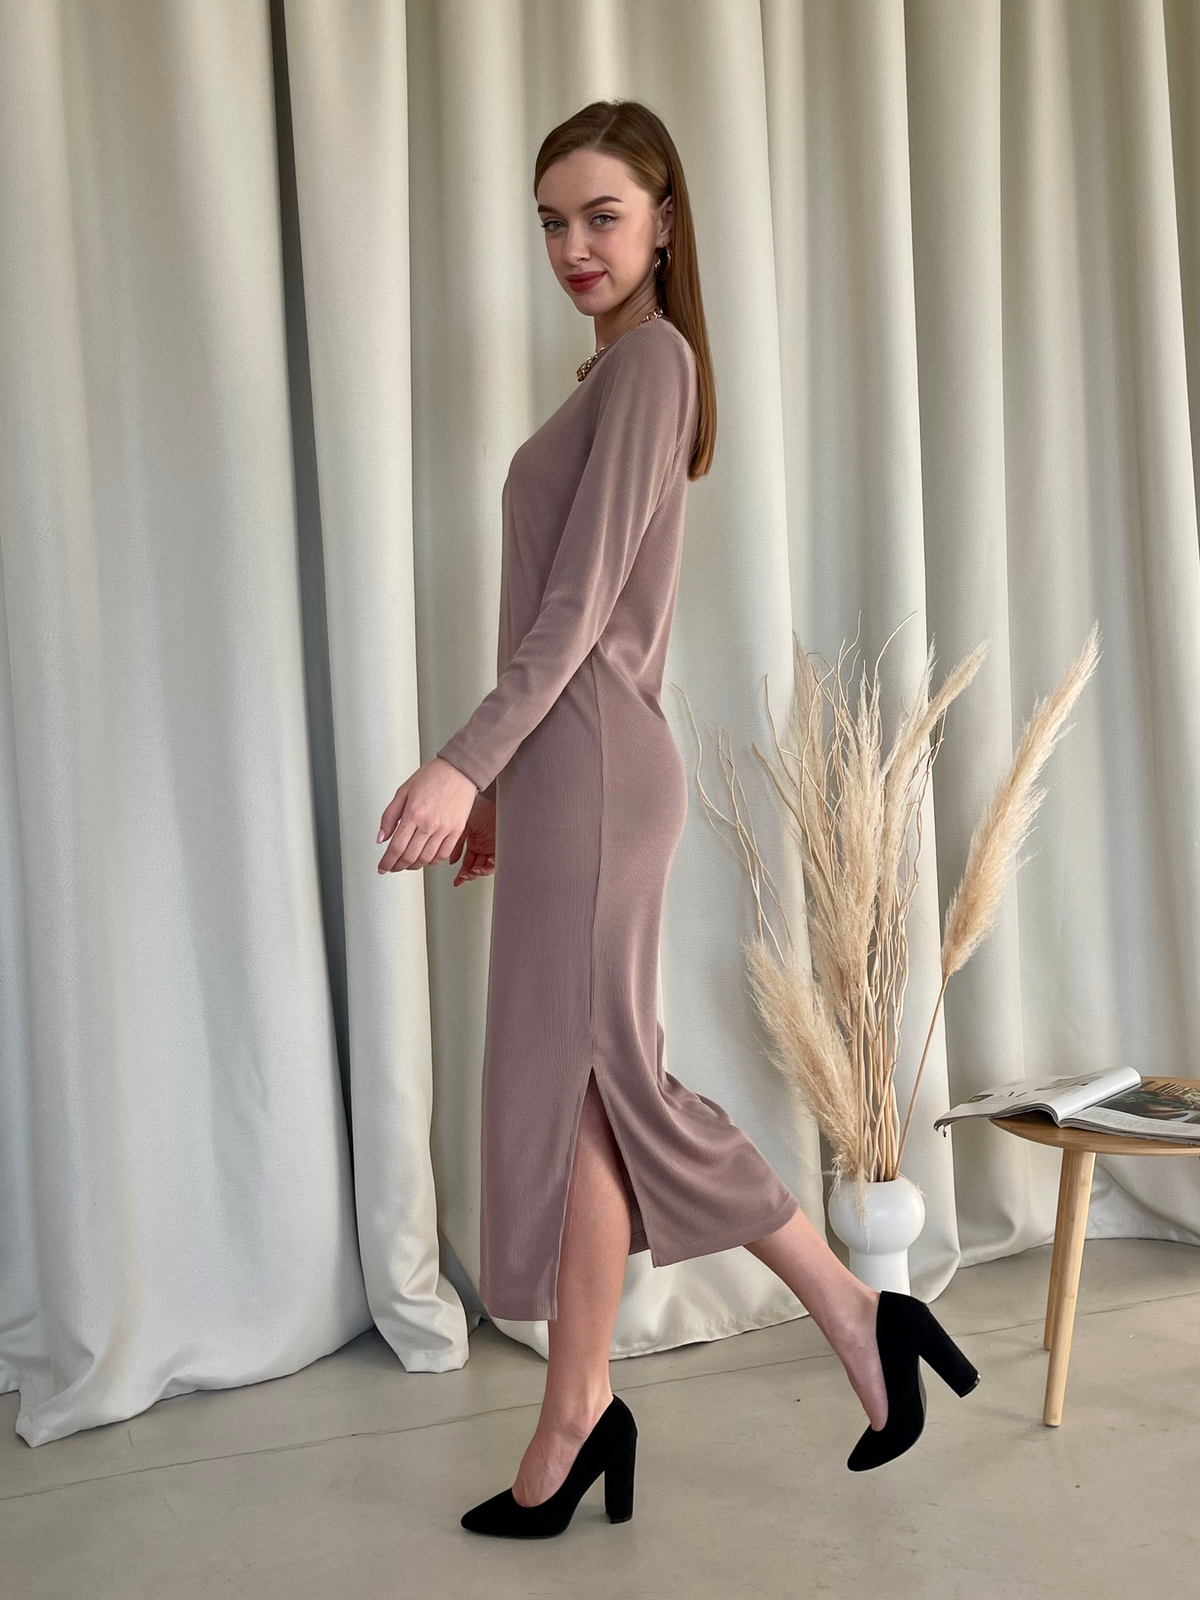 Купить Длинное платье бежевое в рубчик с длинным рукавом Merlini Кондо 700001164, размер 42-44 (S-M) в интернет-магазине